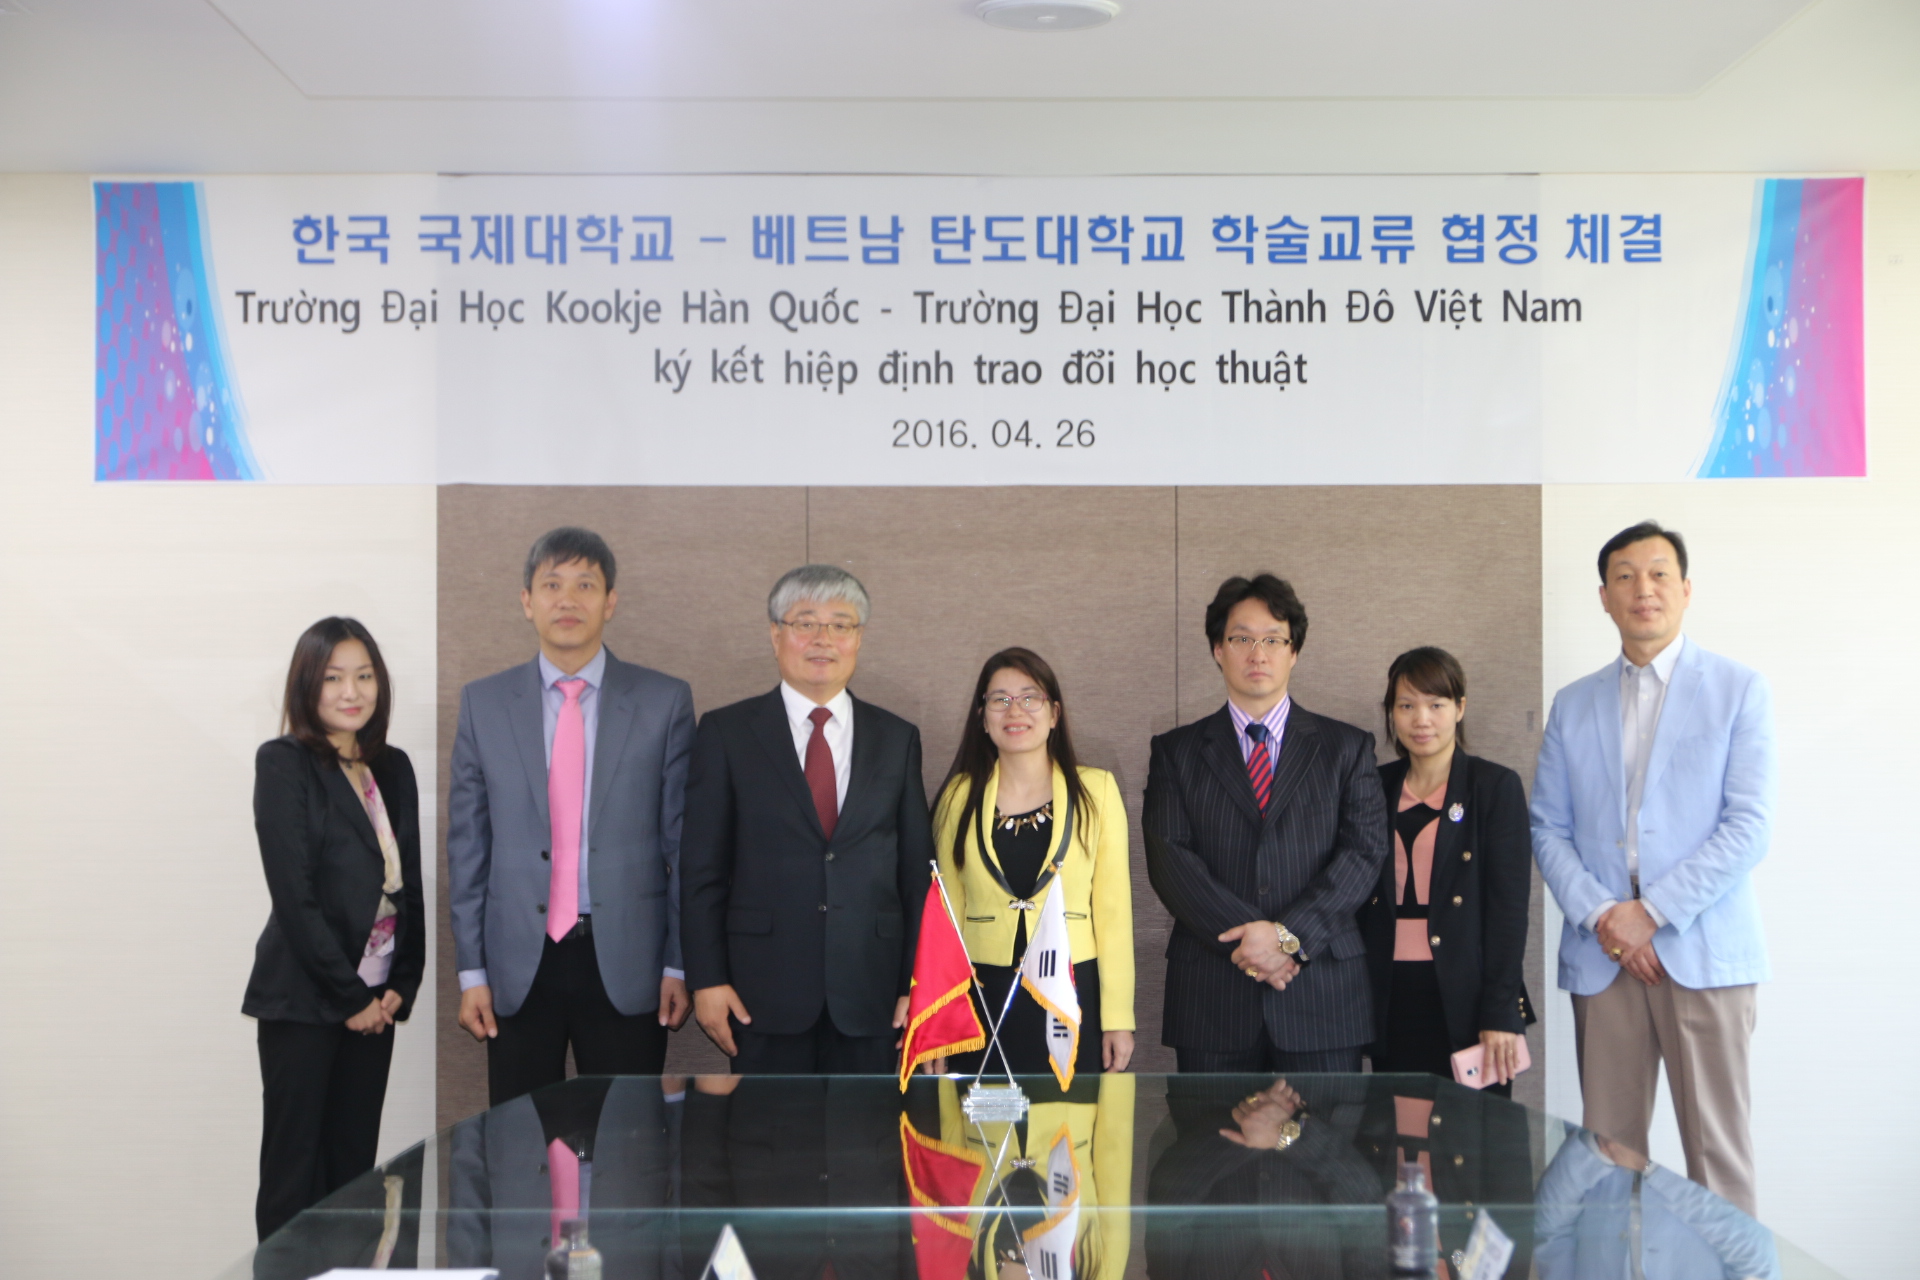 몽골 글로벌리더십대학교 방문 협약식 체결